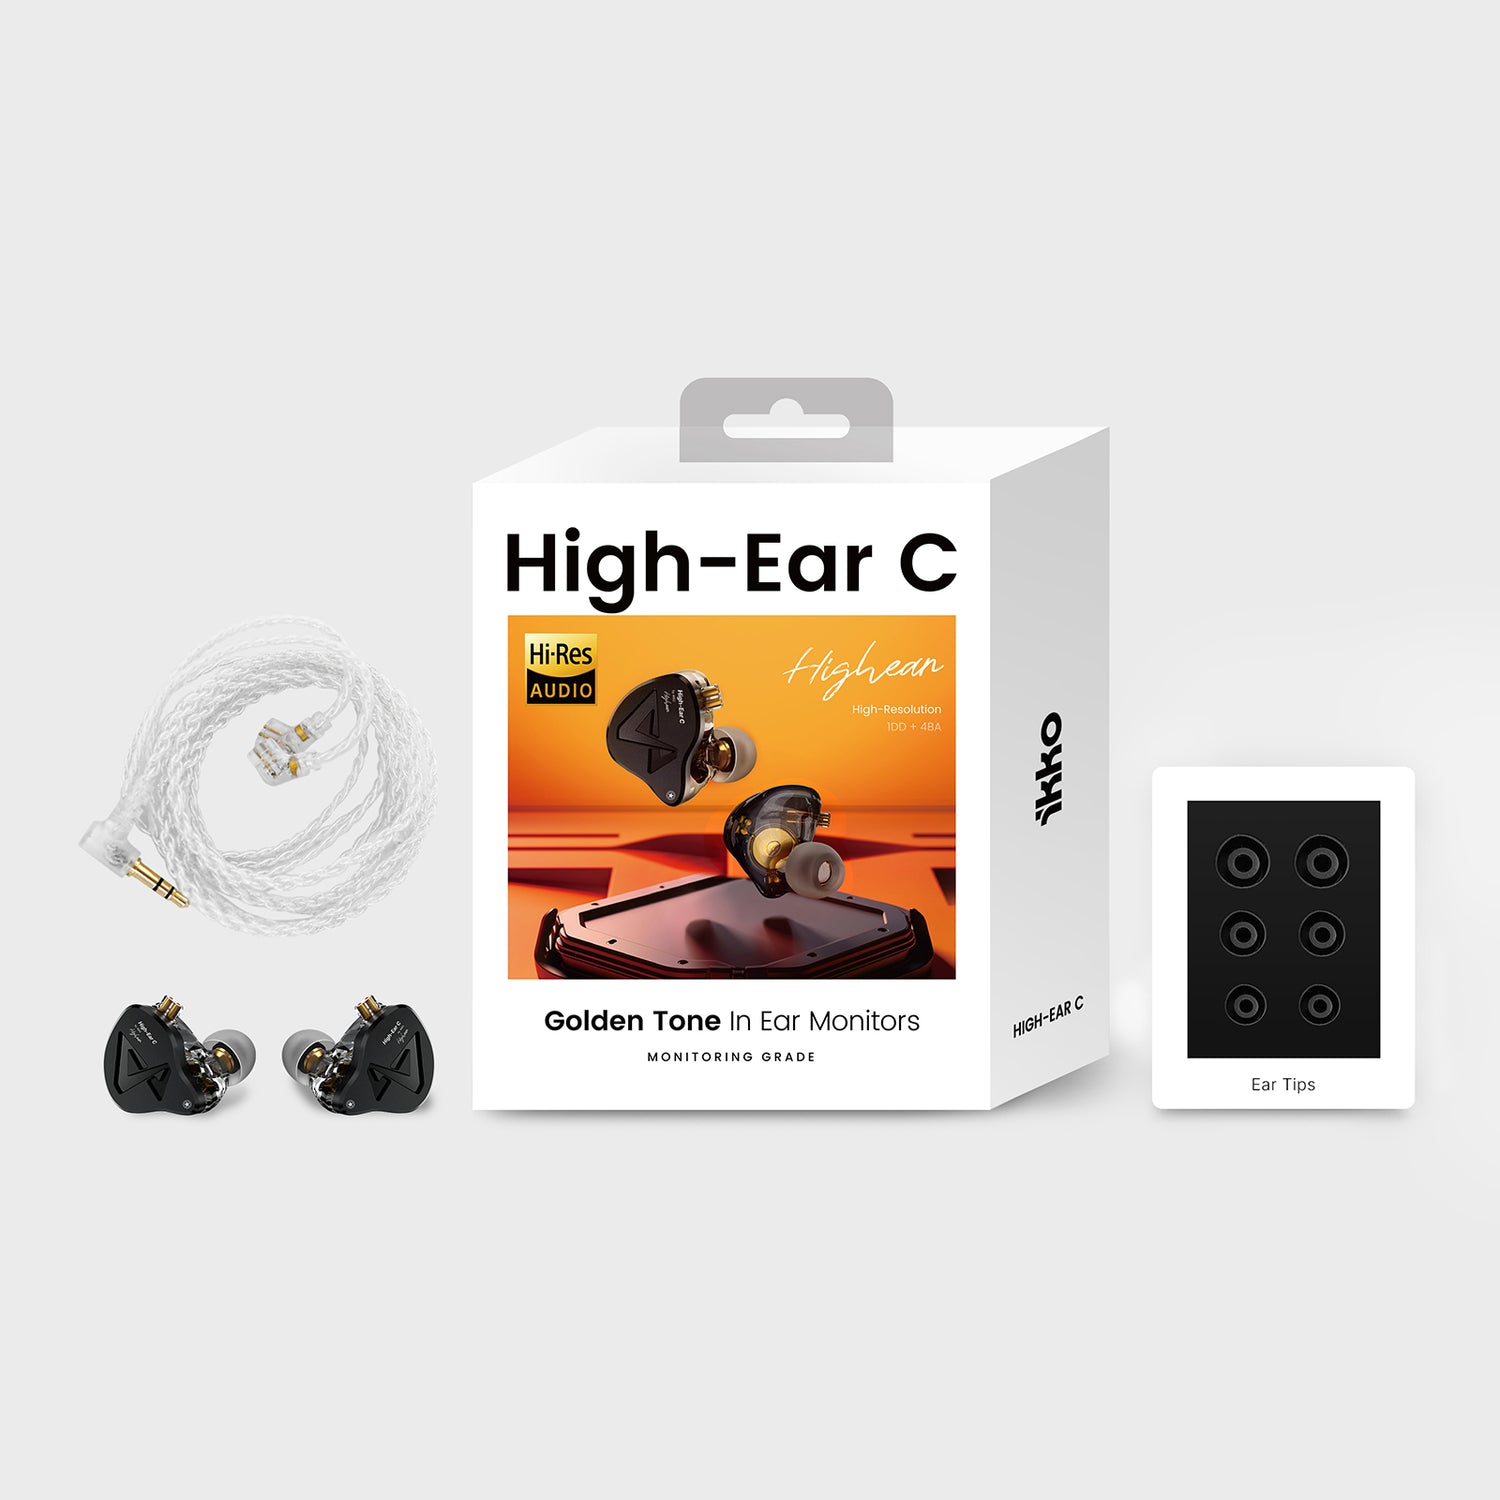 High-Ear C